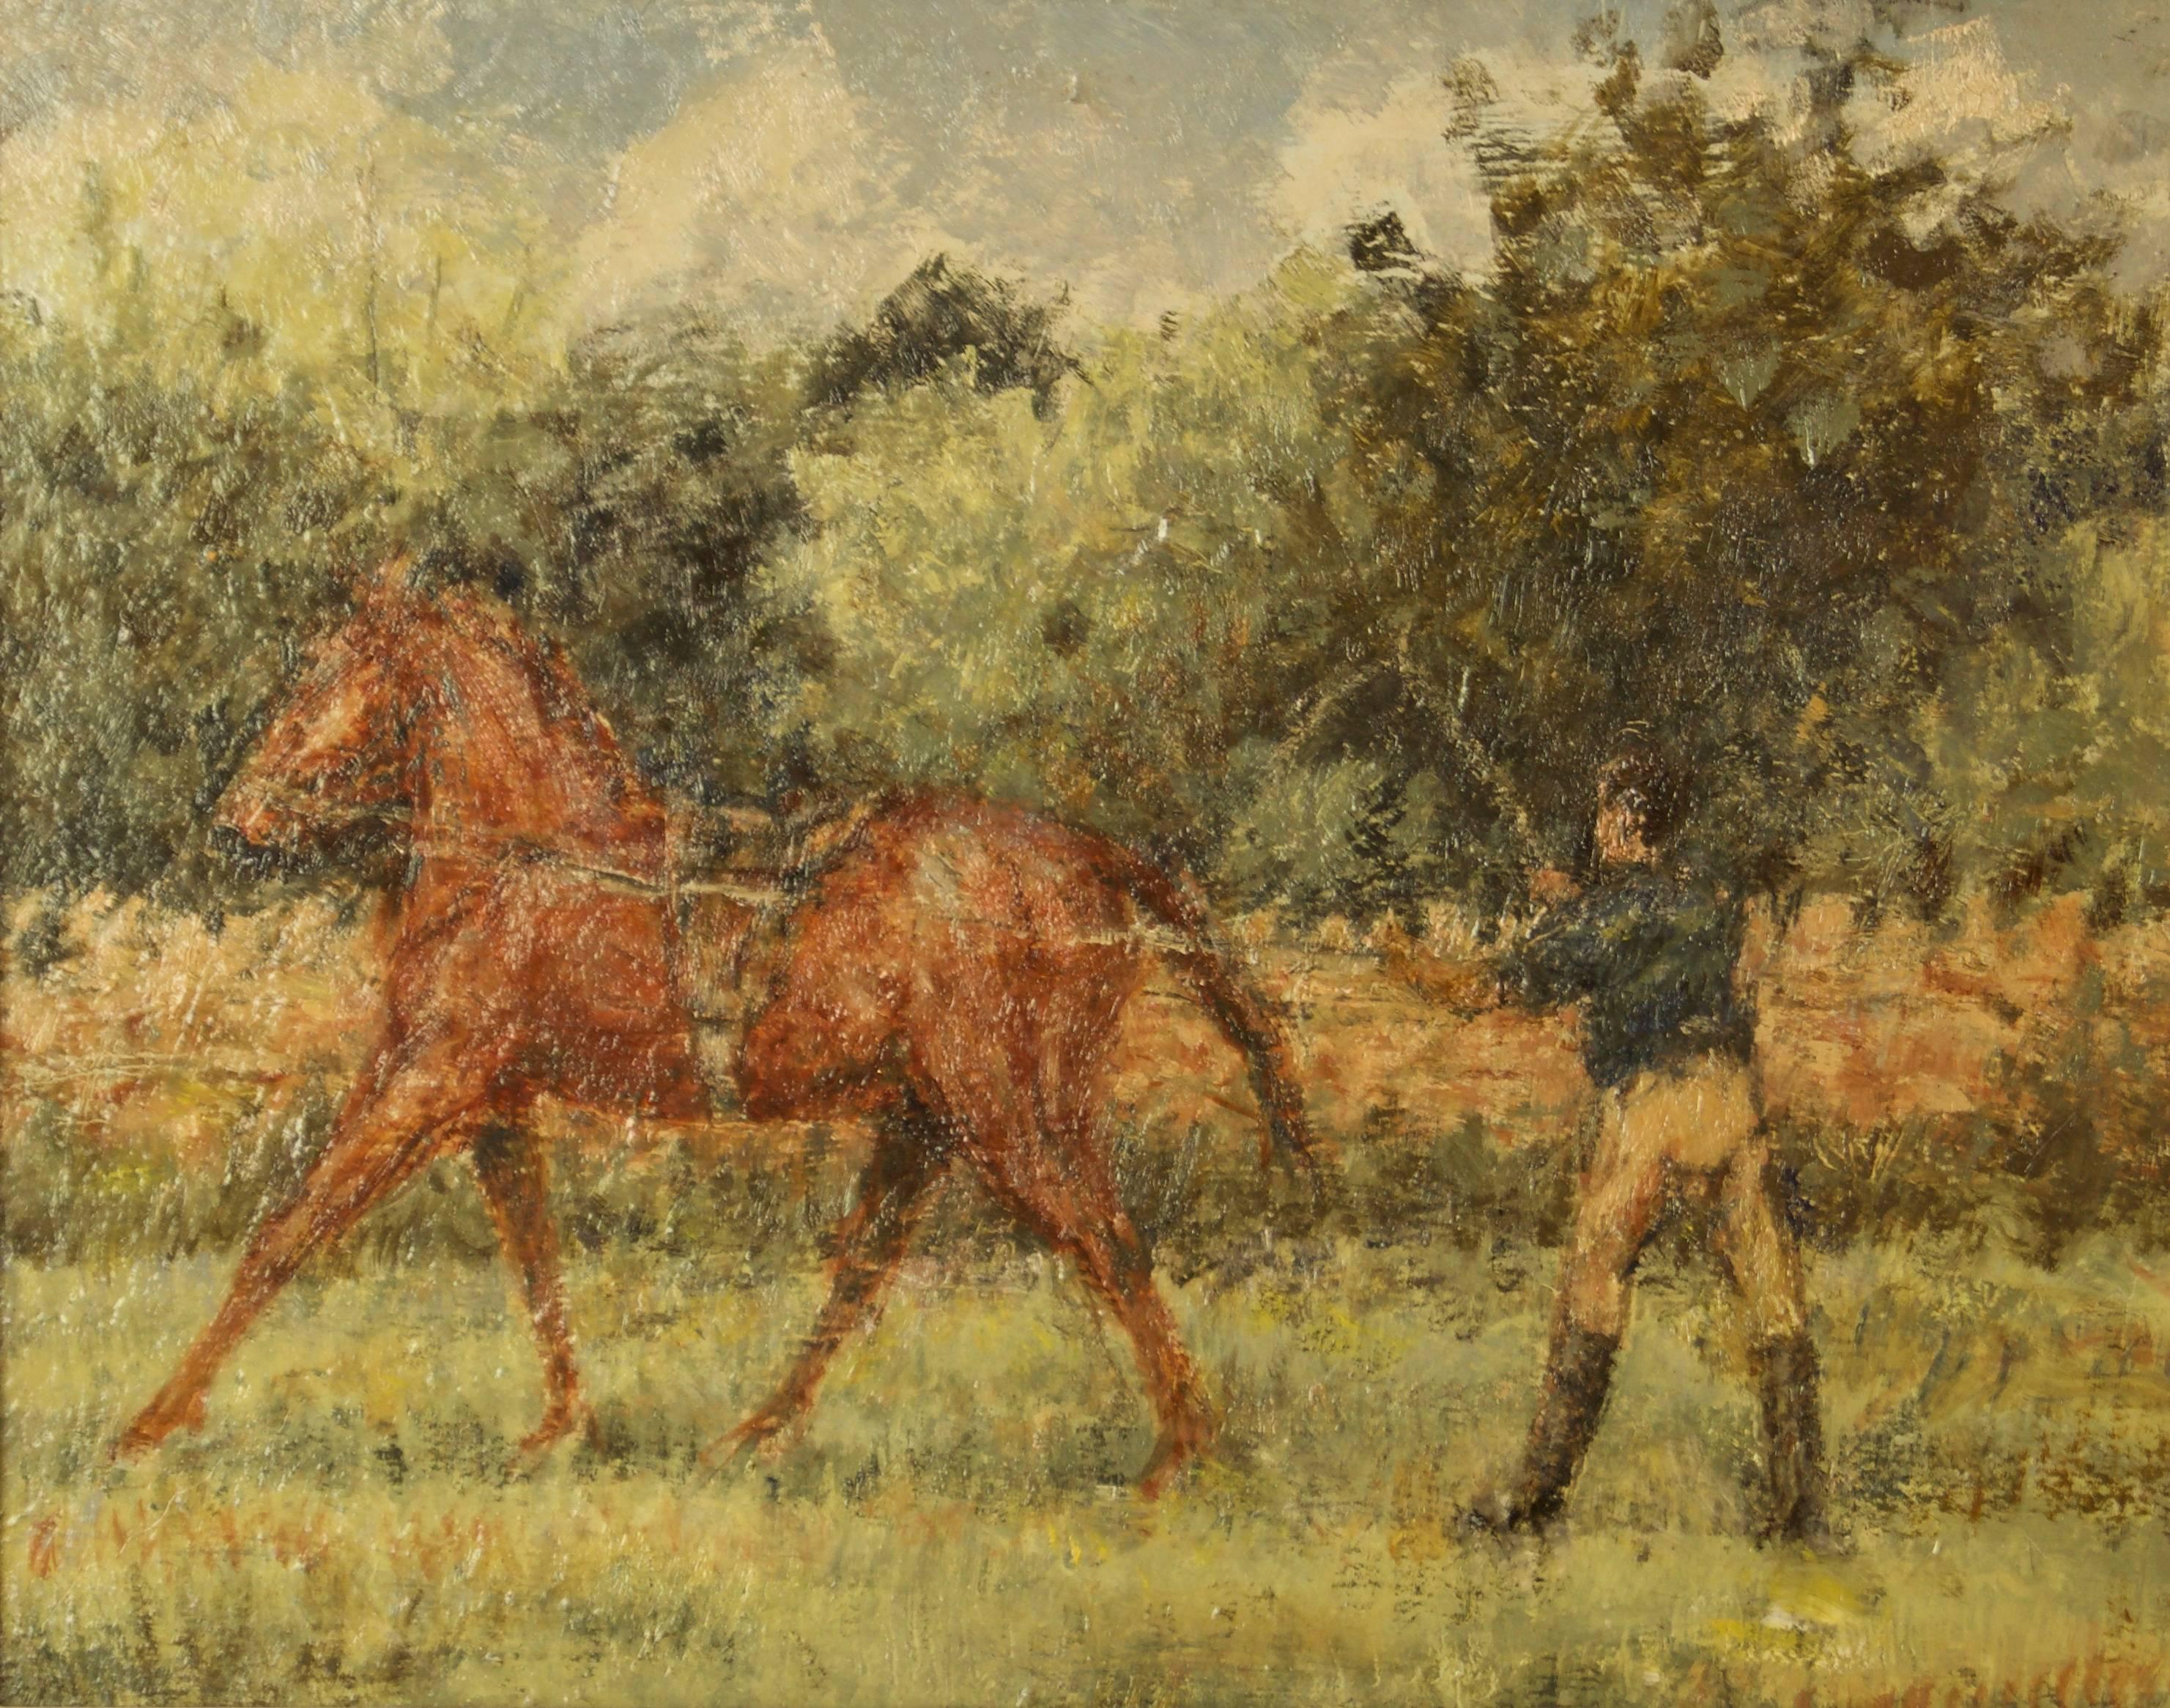 Kay Hinwood (1920 - 2006)

Dieses Werk mit dem Titel Training Day wurde mit Öl auf Karton gemalt und befindet sich in einem handgefertigten, geflochtenen Verbundrahmen.

Es enthält: Pferd, Pferde, Training, Menschen, Reiter, Reiten, Landschaft,